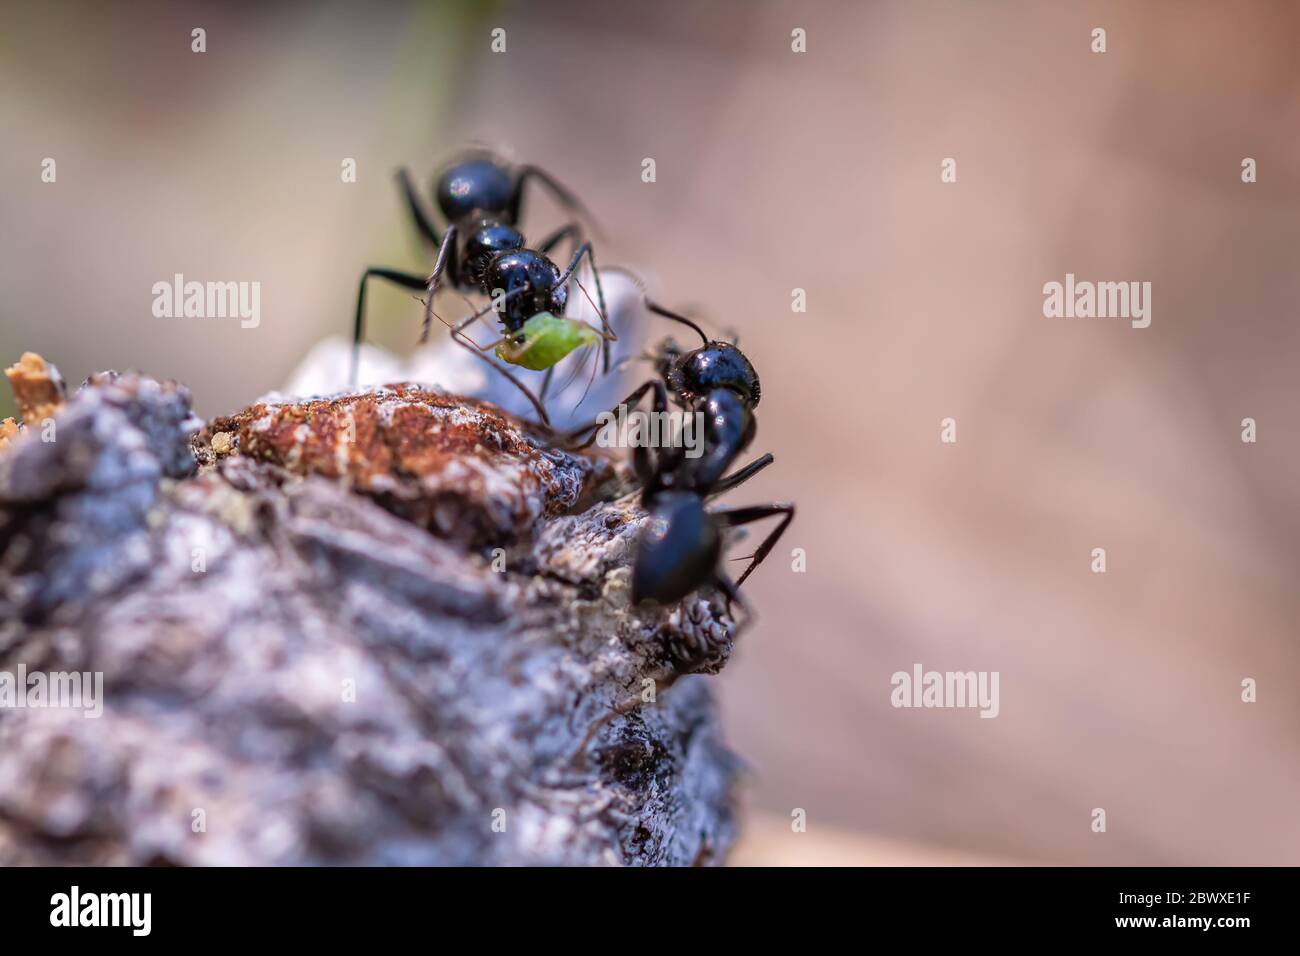 Deux charpentiers lisses Camponotus laevigatus, dont un tenant un puceron dans ses griffes, parc national de Yosemite, Californie, États-Unis. Banque D'Images